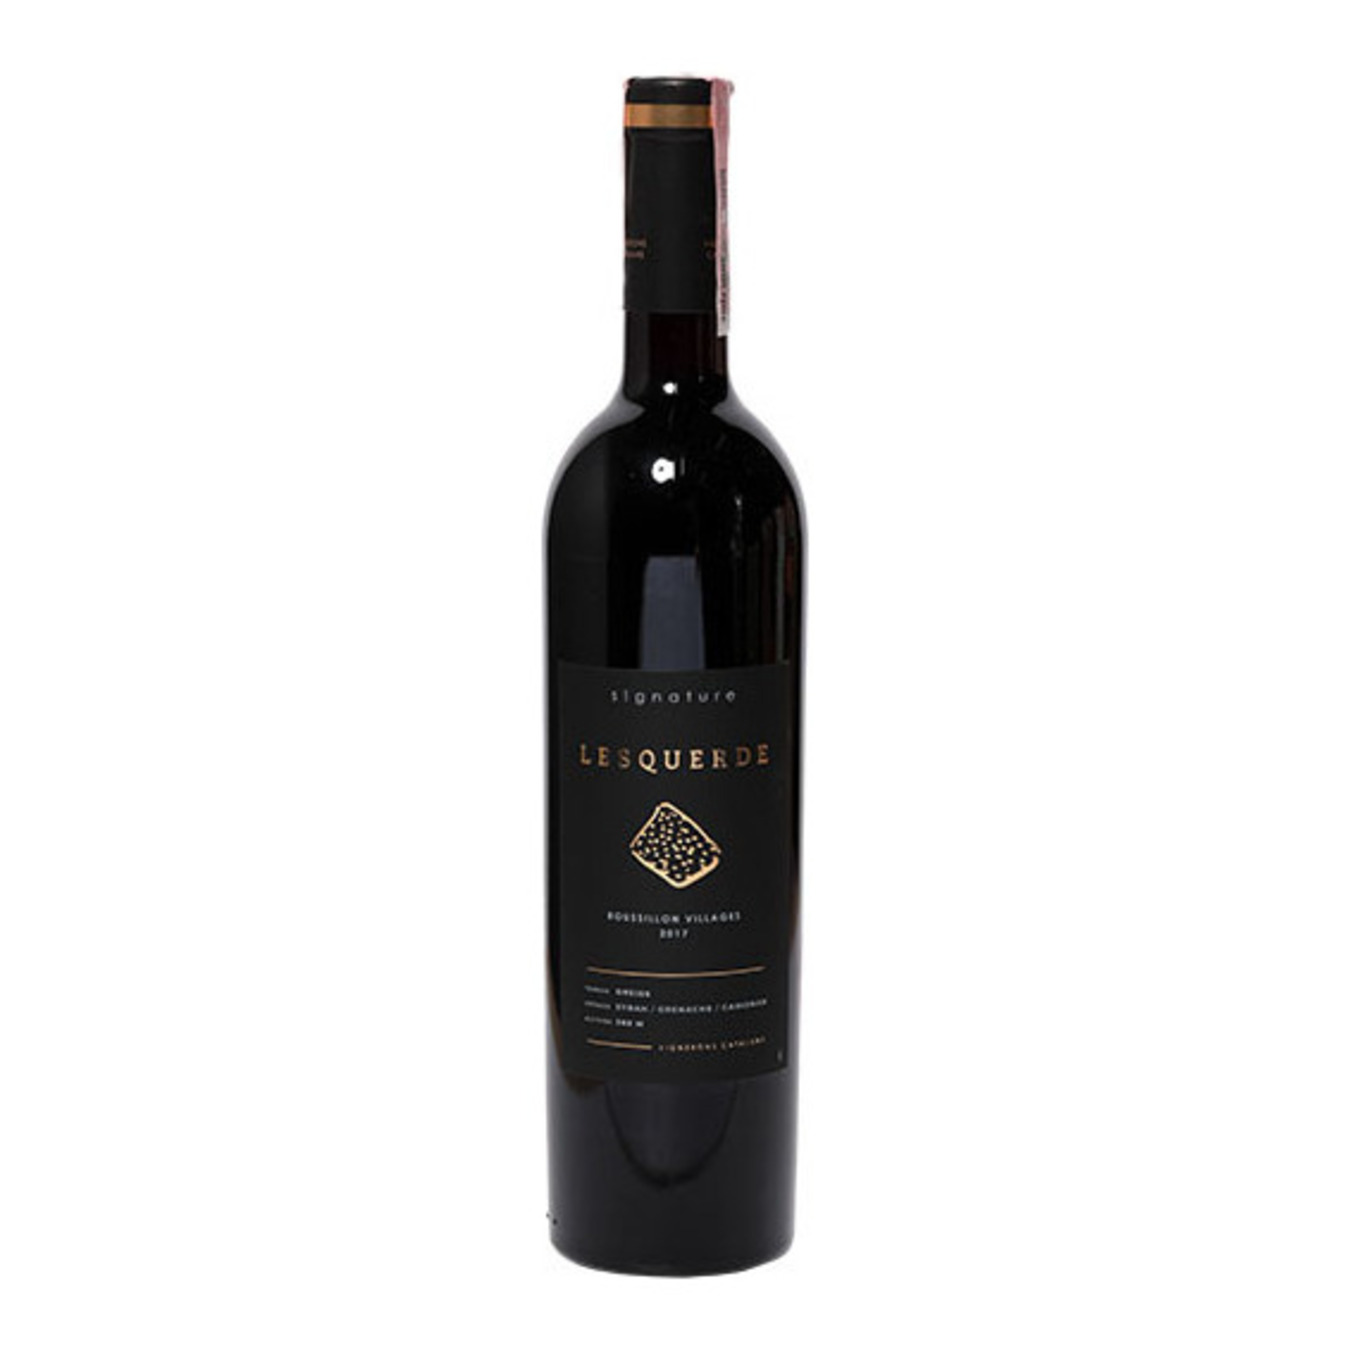 Signature Lesquerde Cotes du Roussillon Village red dry wine 12.5% 0,75l